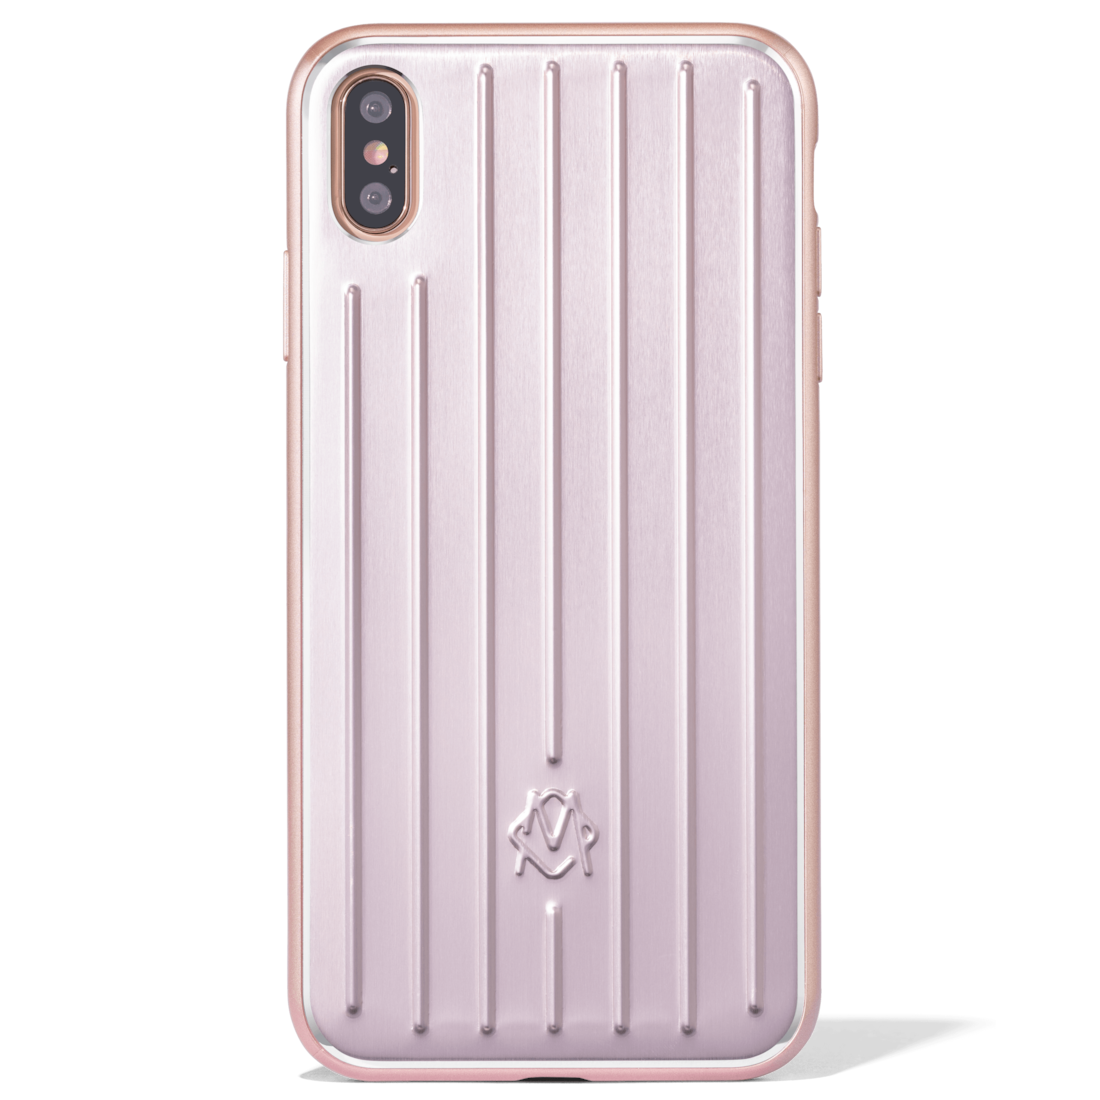 Aluminium iPhone XS Max Case in Pink 